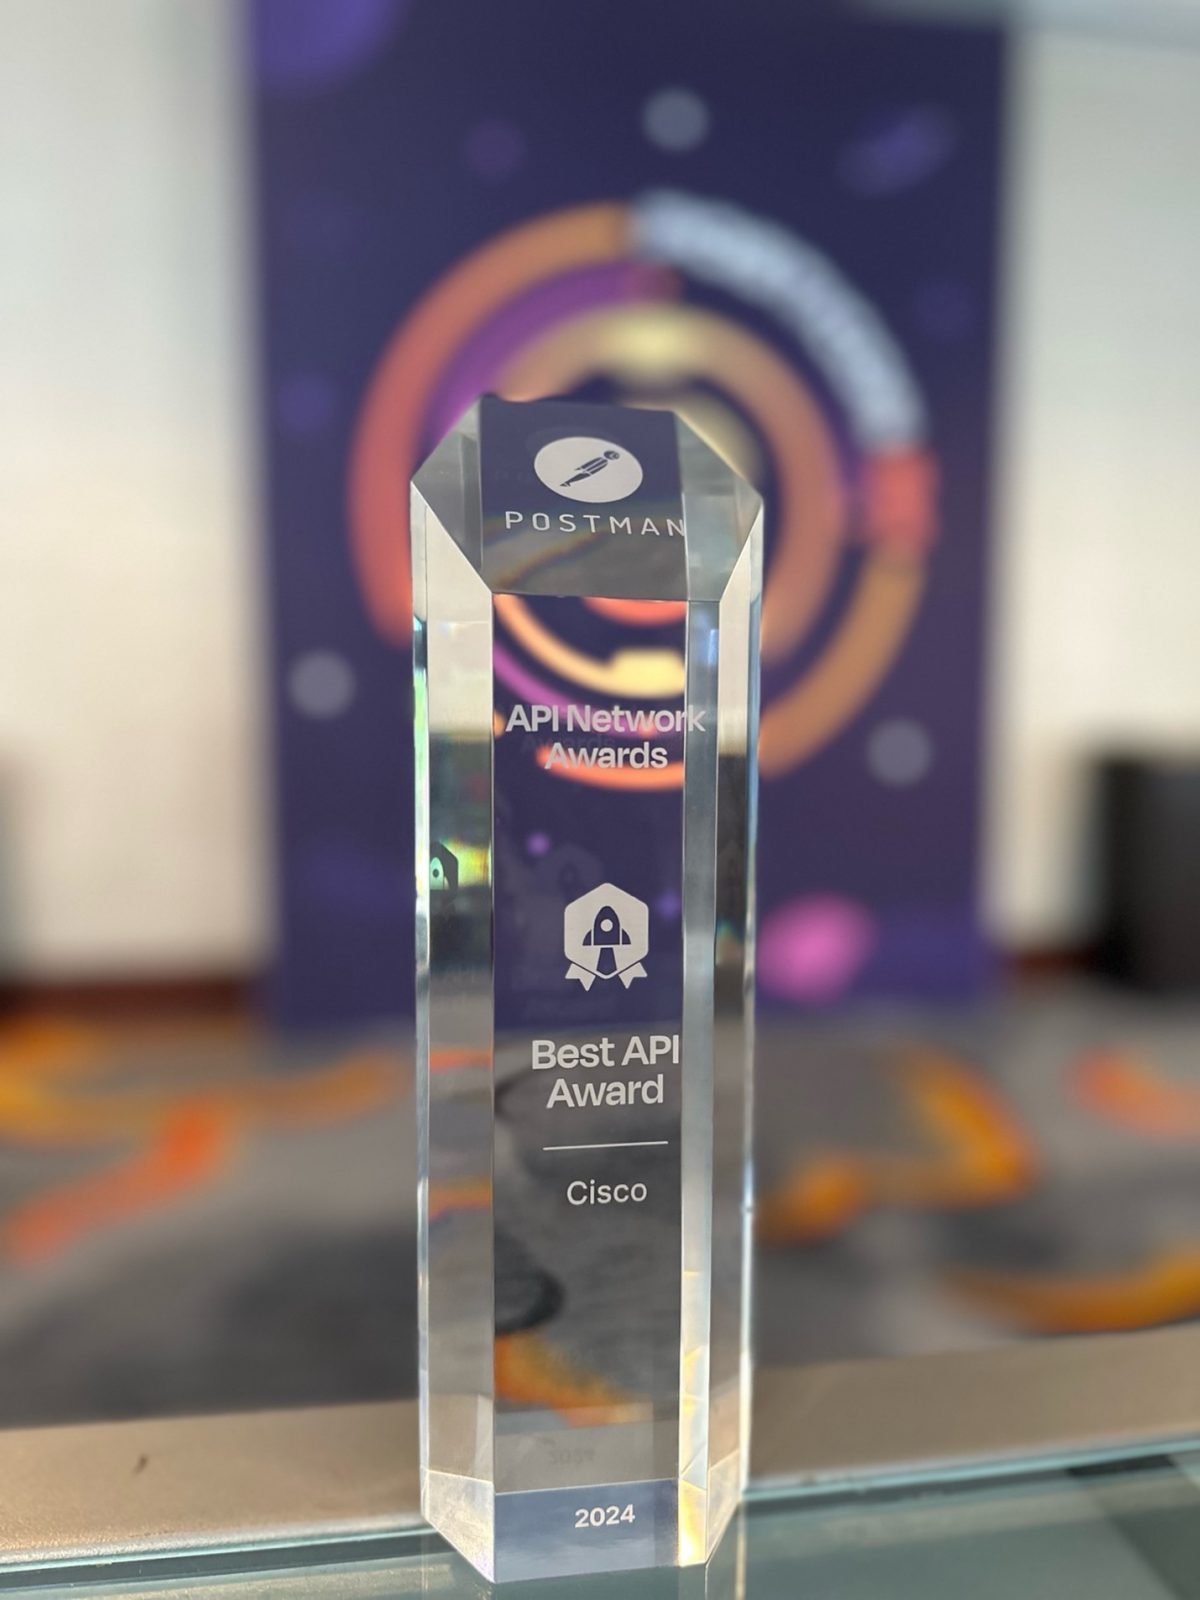 Cisco Meraki Secures the Postman “Best API Award”